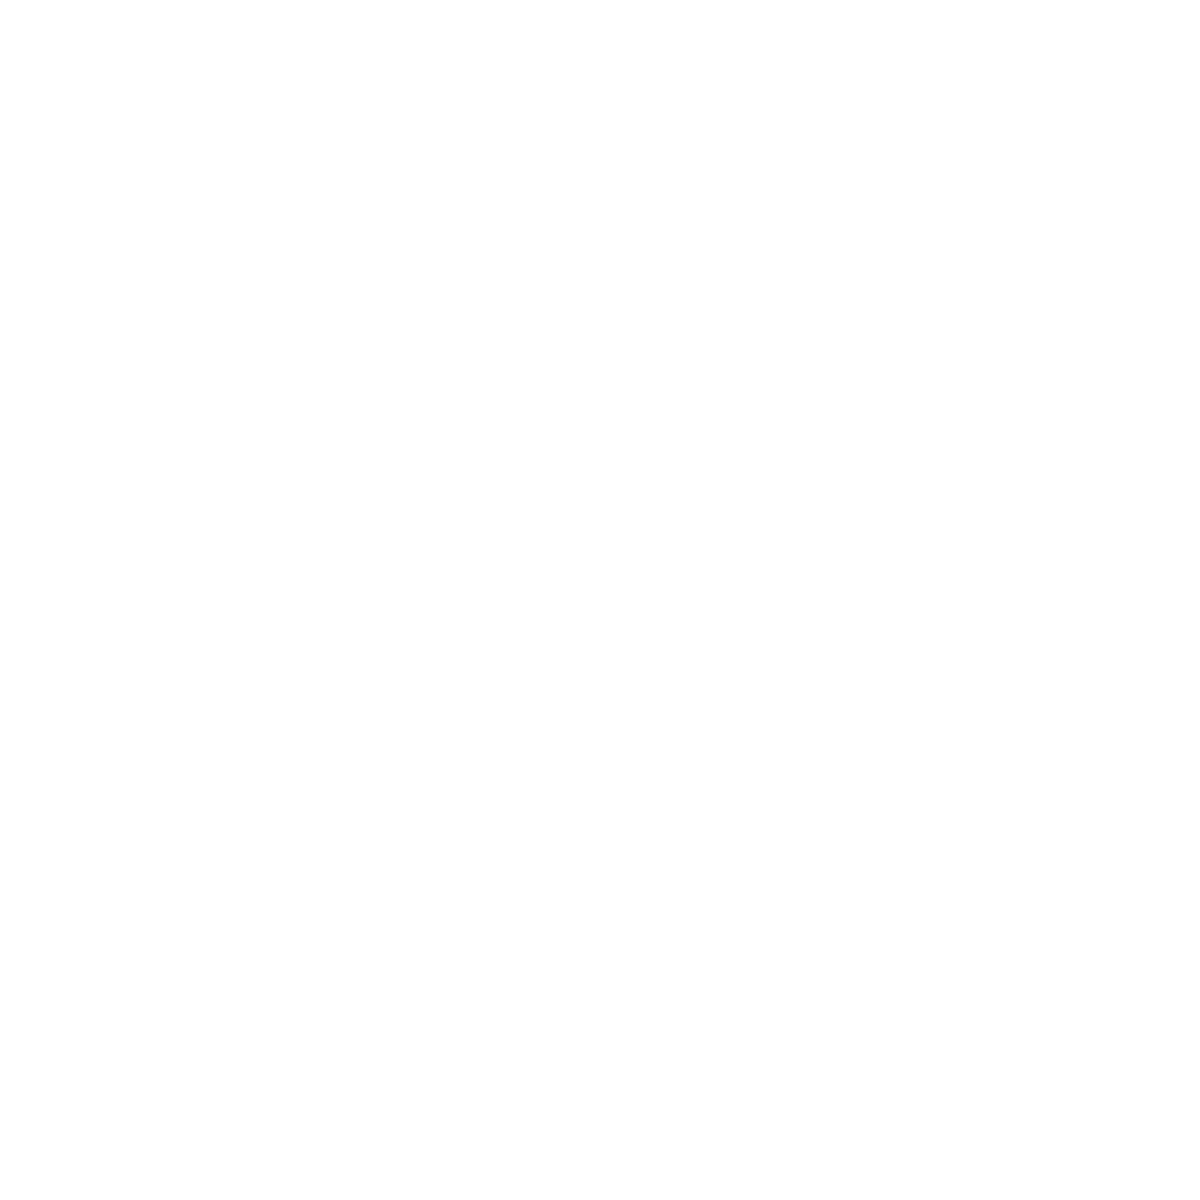 Bloom Agencia Digital